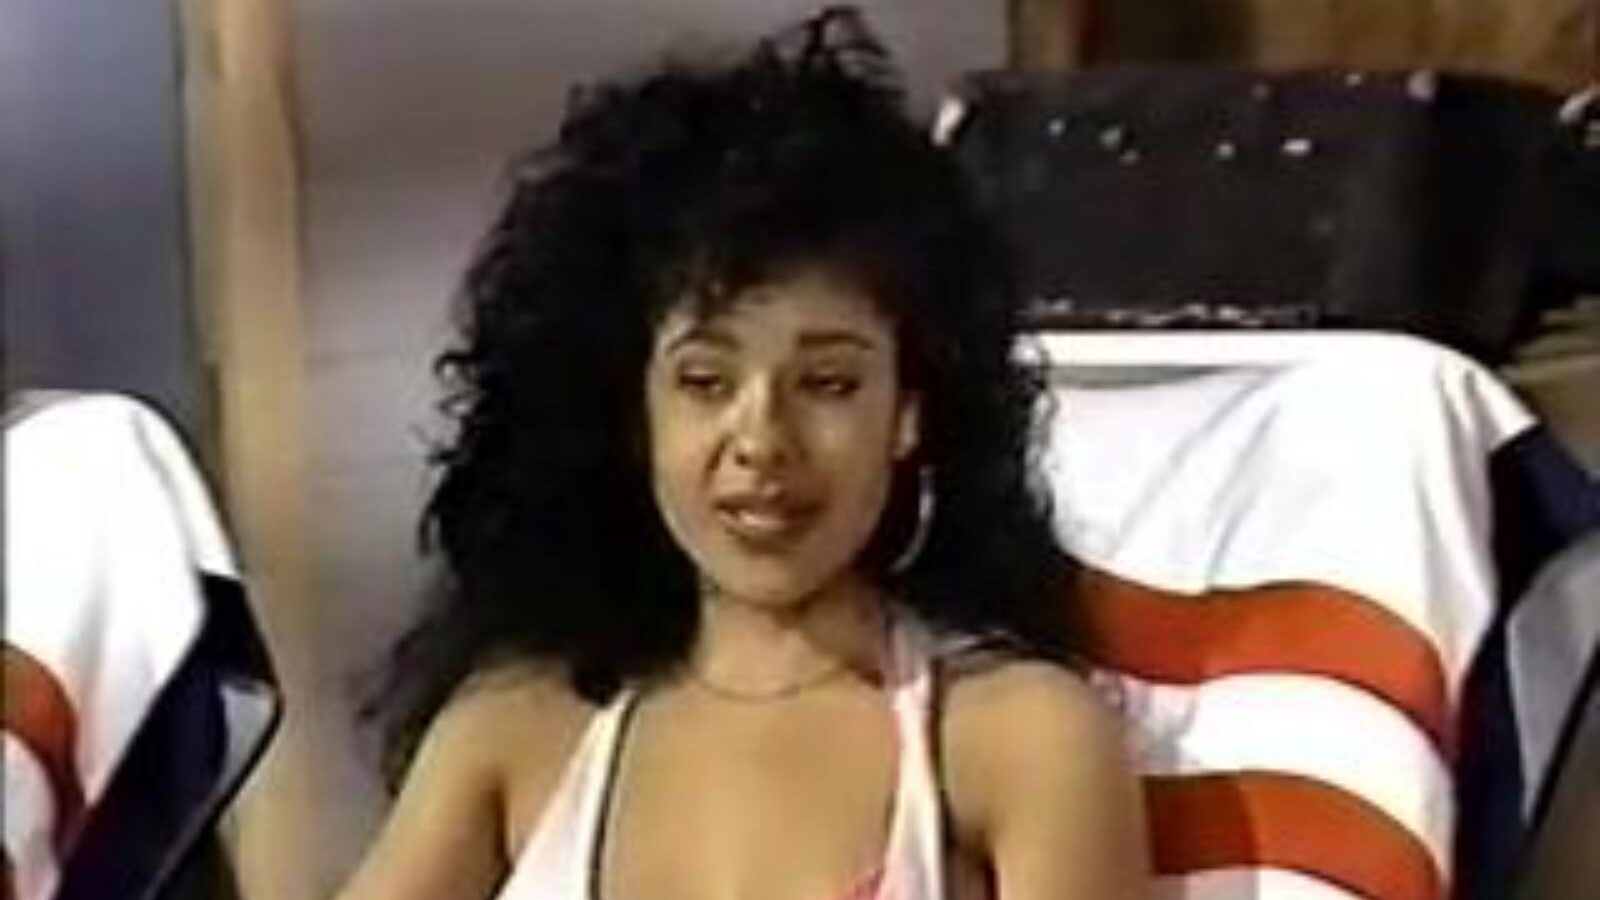 retro usa 693 90-ih: besplatni porno video iz 1992 0c - xhamster gledajte besplatno retro scene iz SAD-a 693 90-ih na grbavoj sceni na xhamsteru, sa najseksi bevyjem iz 1992., retro, besplatnim filmskim scenama u SAD-u i SAD-u